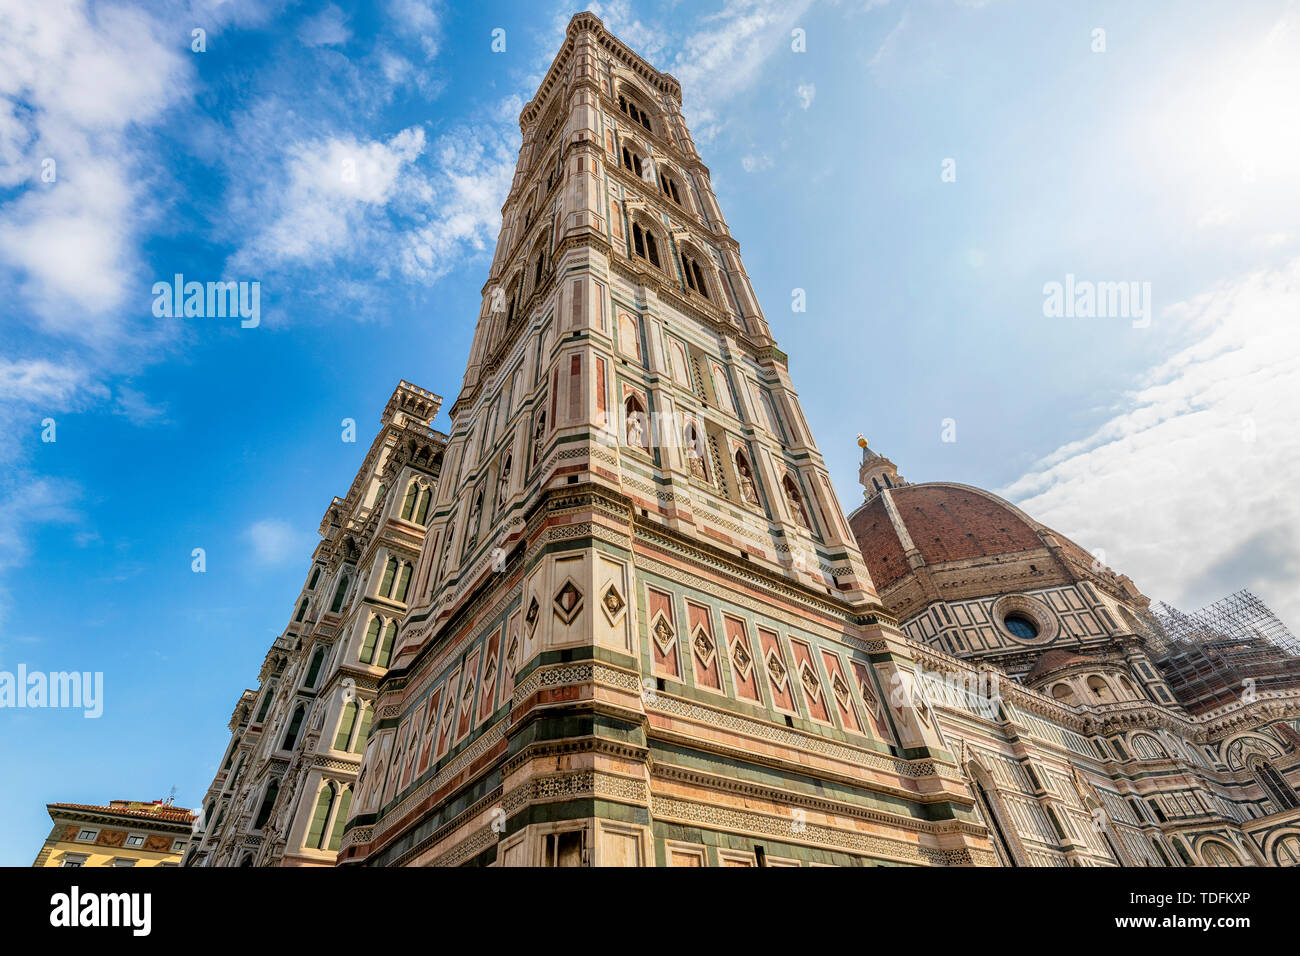 Vue de la tour du clocher, construit par Giotto et le dôme de la cathédrale, construite par Brunelleschi. Banque D'Images